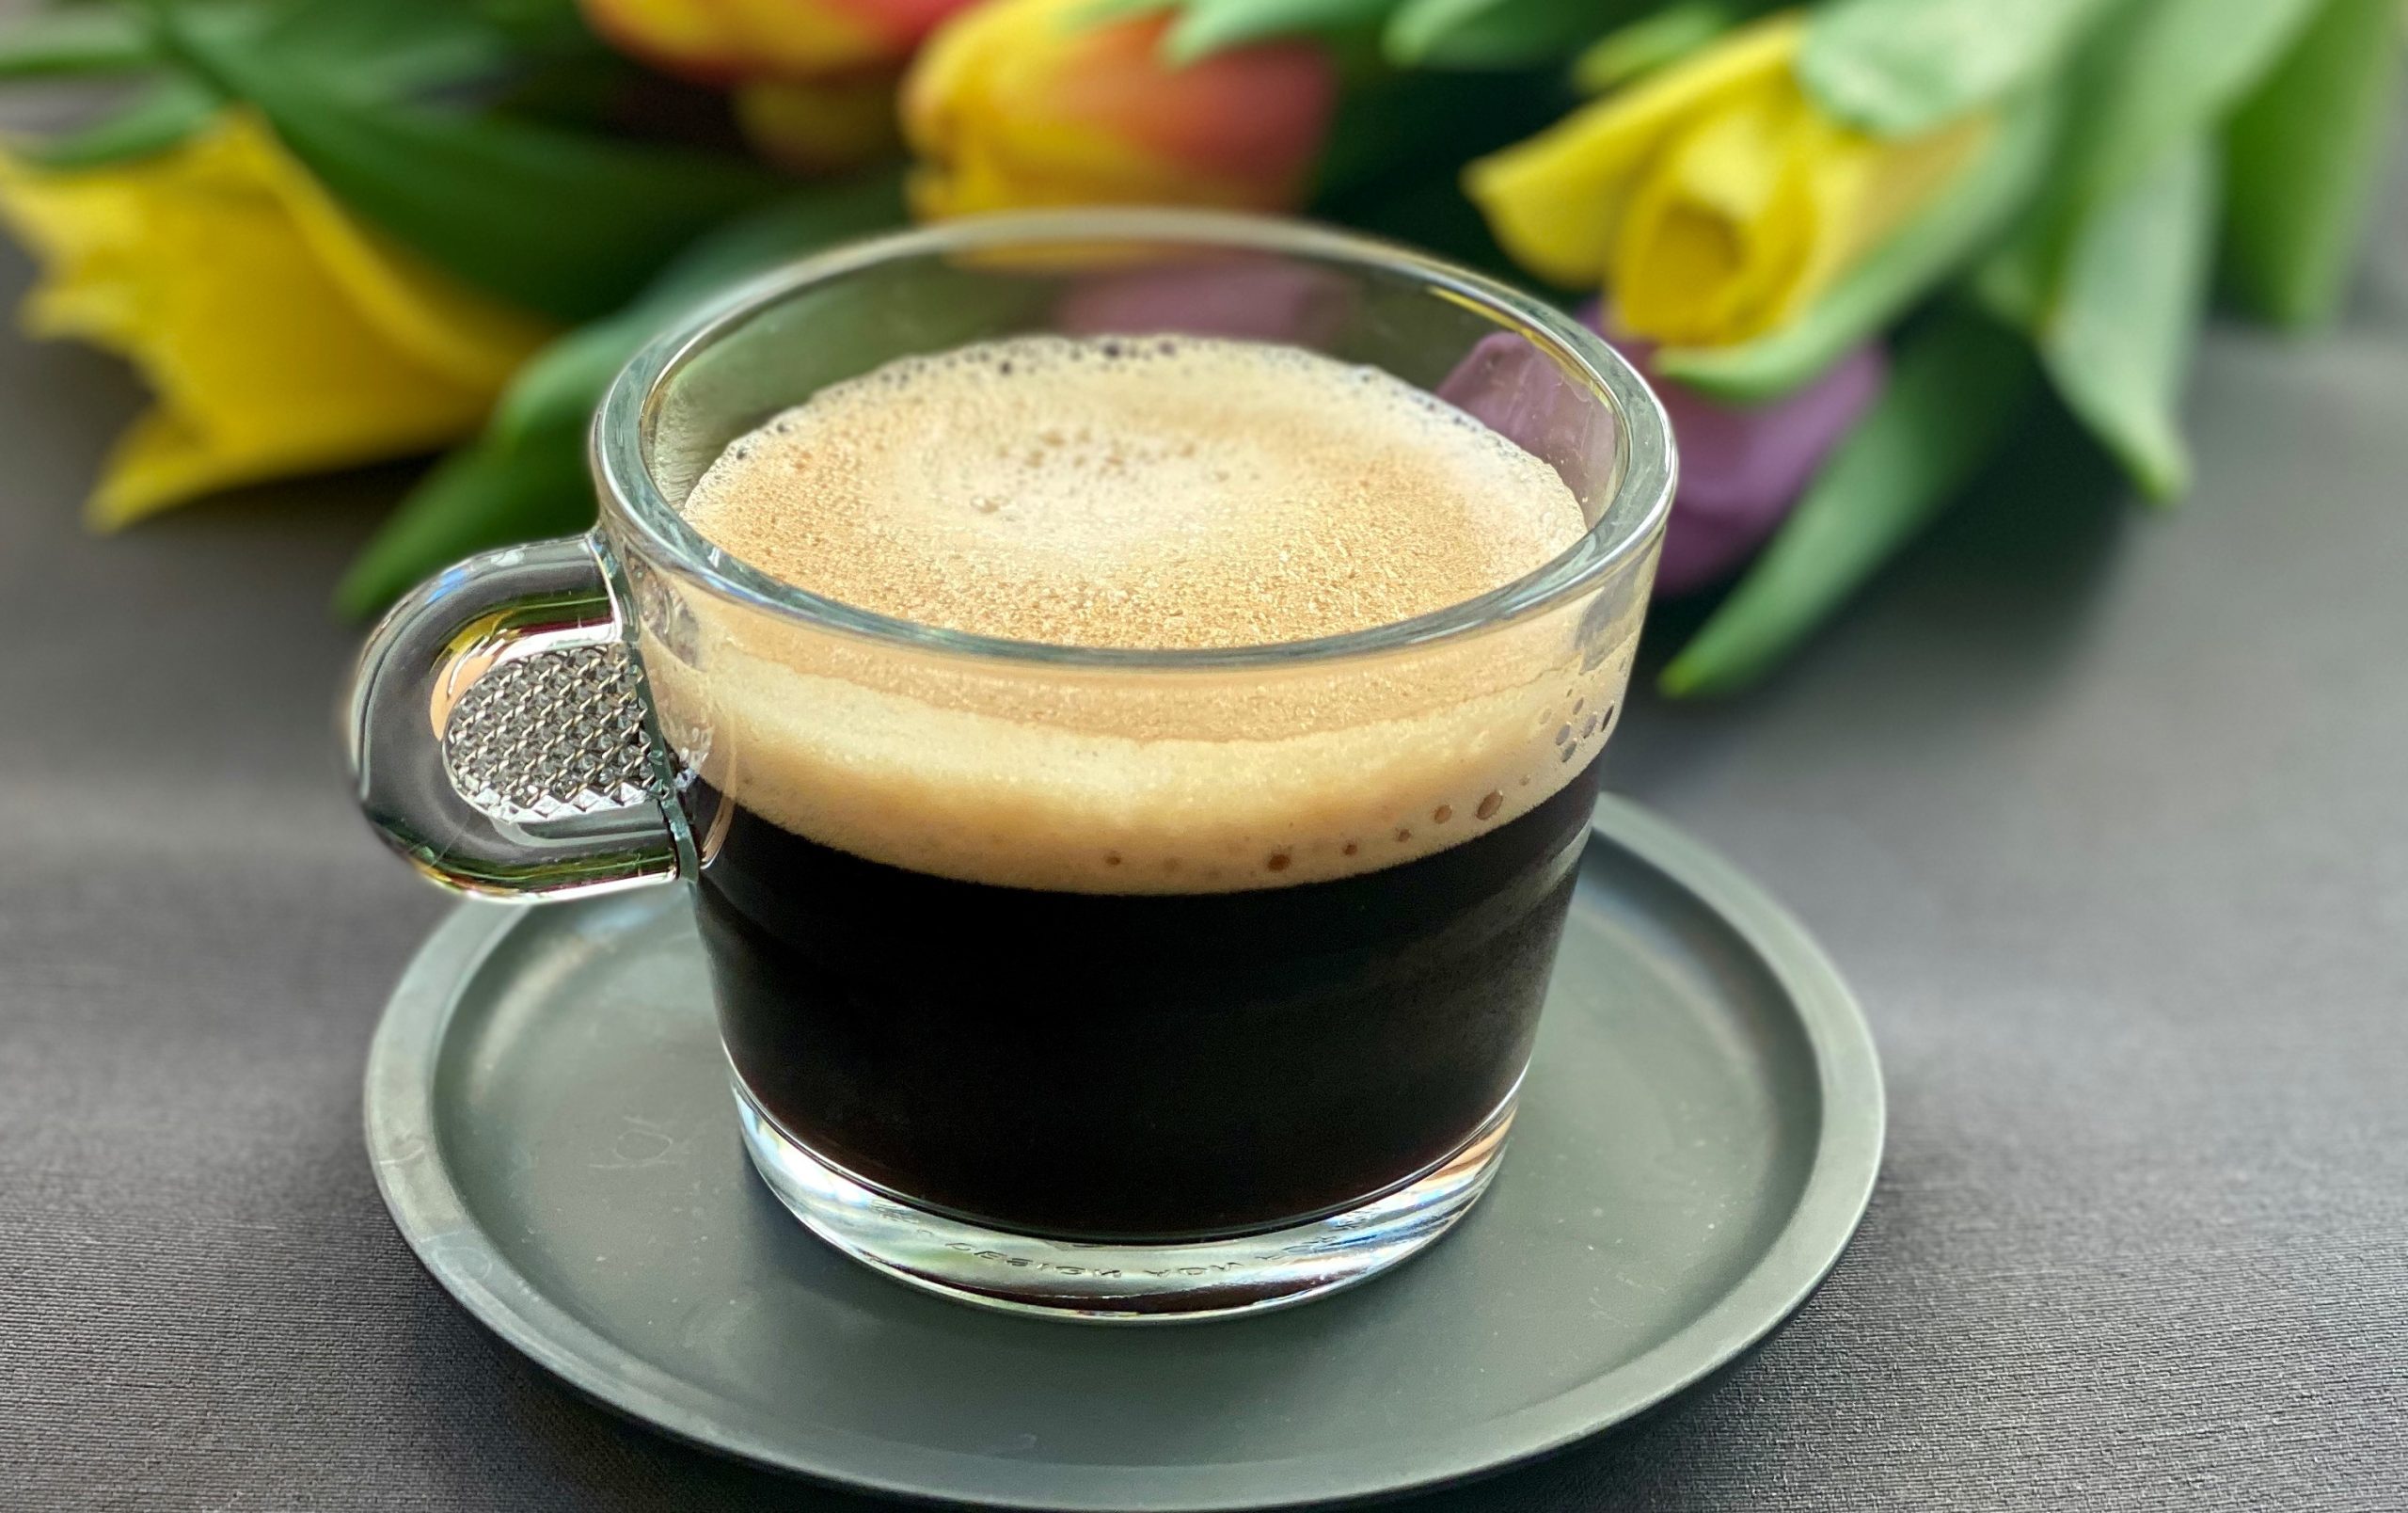 You are currently viewing Már kávét sem ihatok? – avagy a változókori táplálkozás buktatói